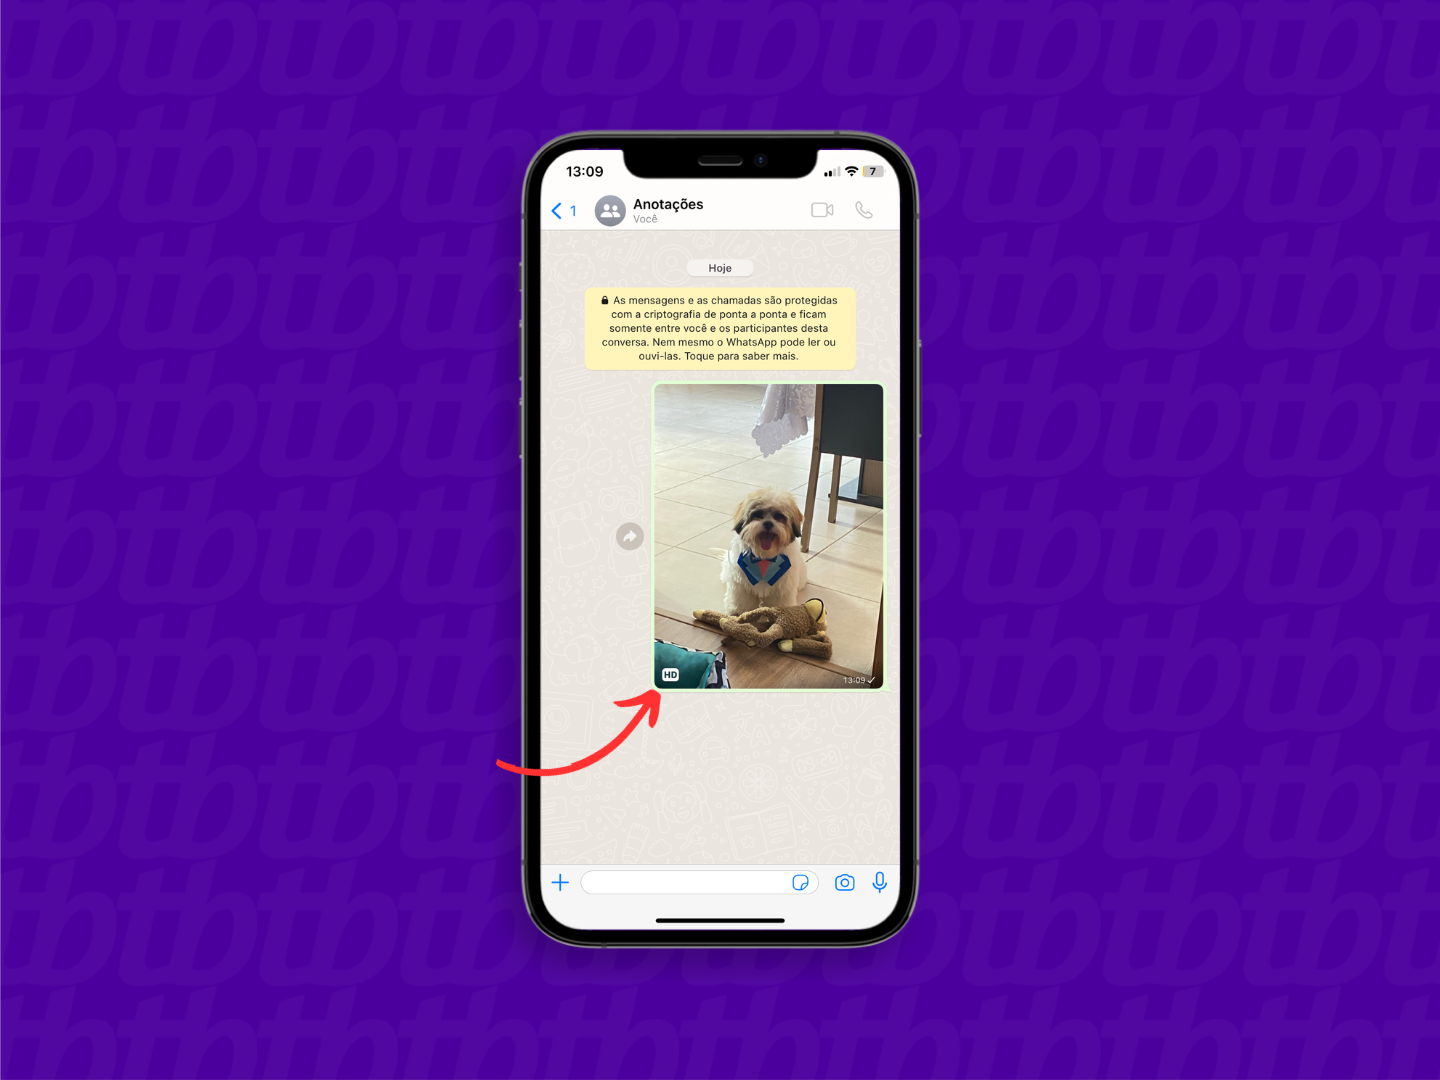 Mockup de iPhone com print de conversa do WhatsApp. Uma seta indica o ícone HD, que remete ao envio de imagens em alta definição.